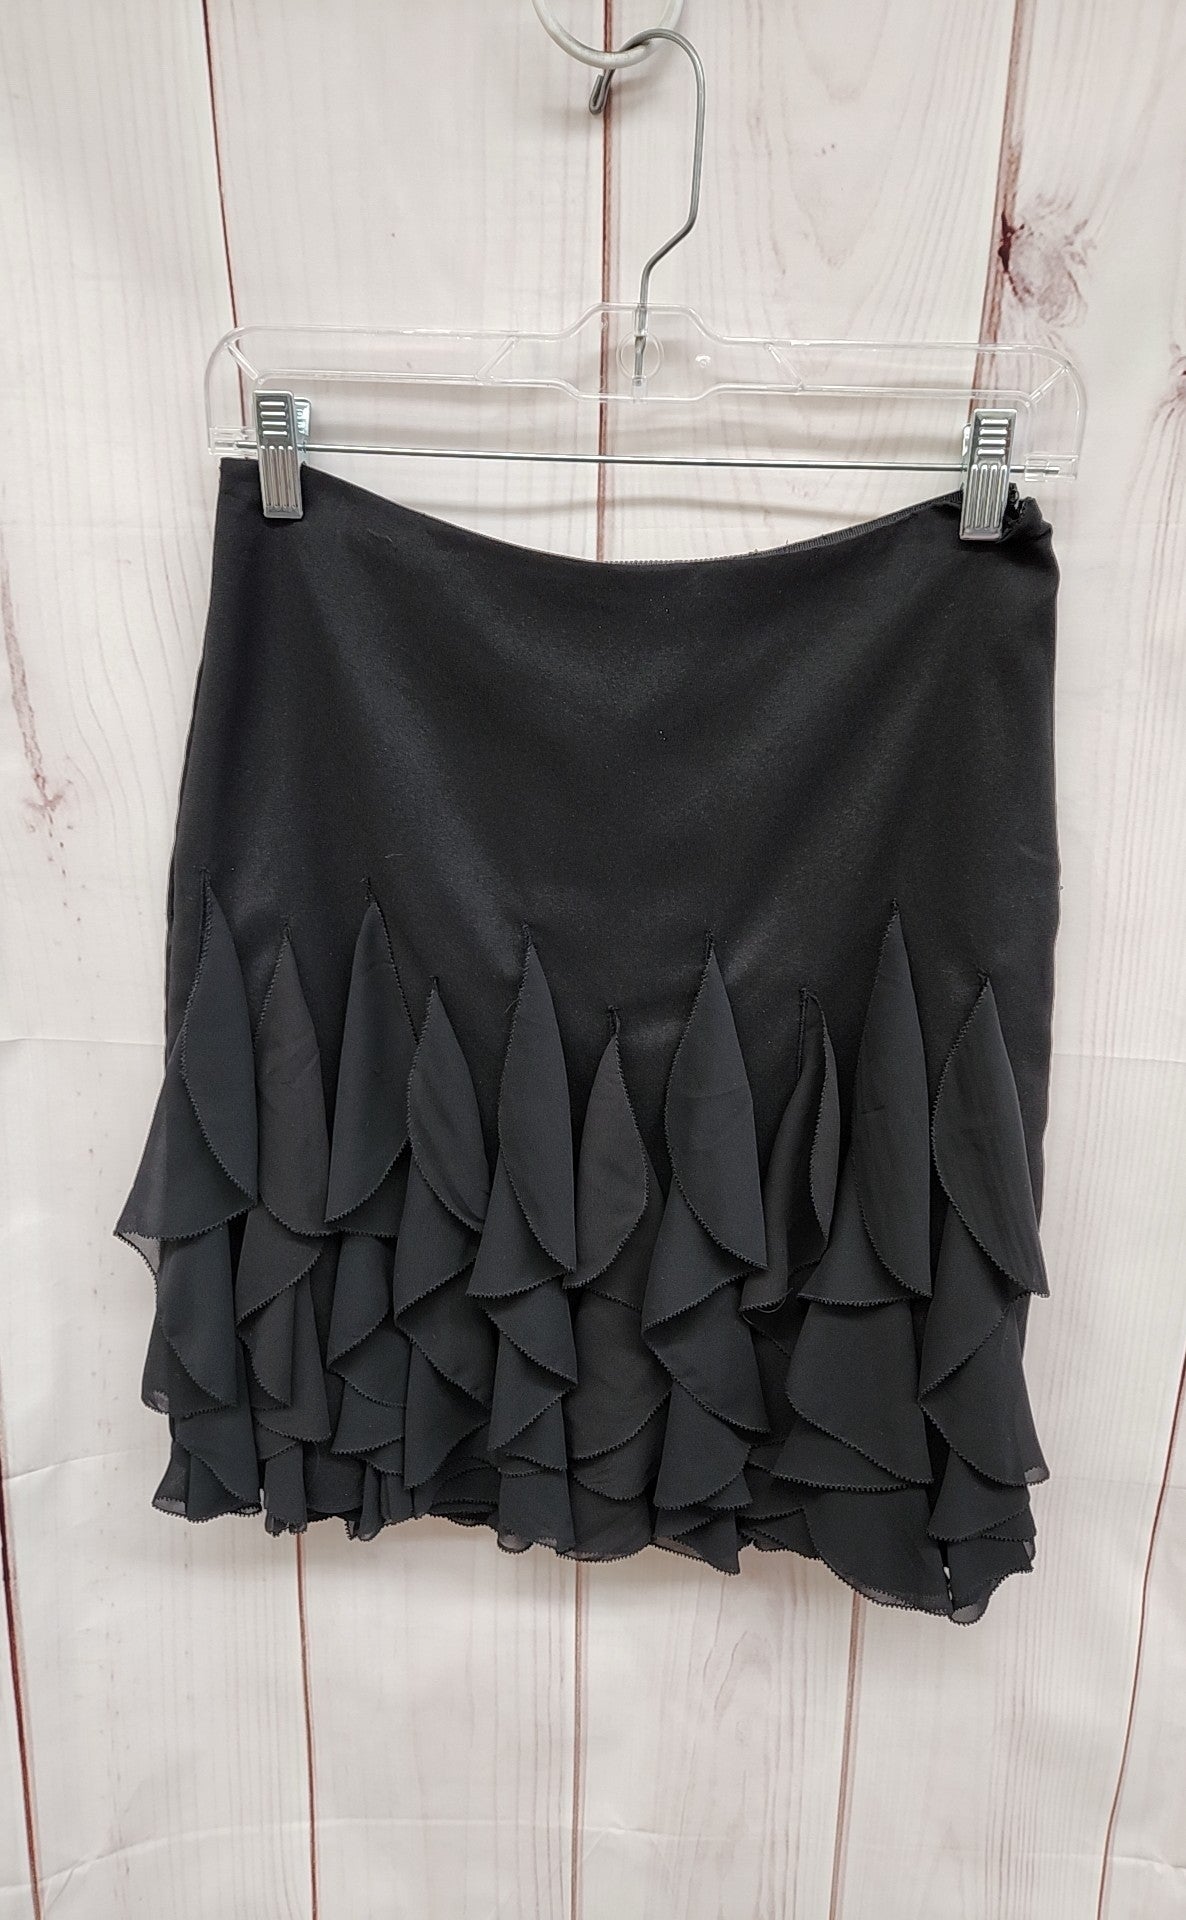 White House Black Market Women's Size 0 Black Skirt